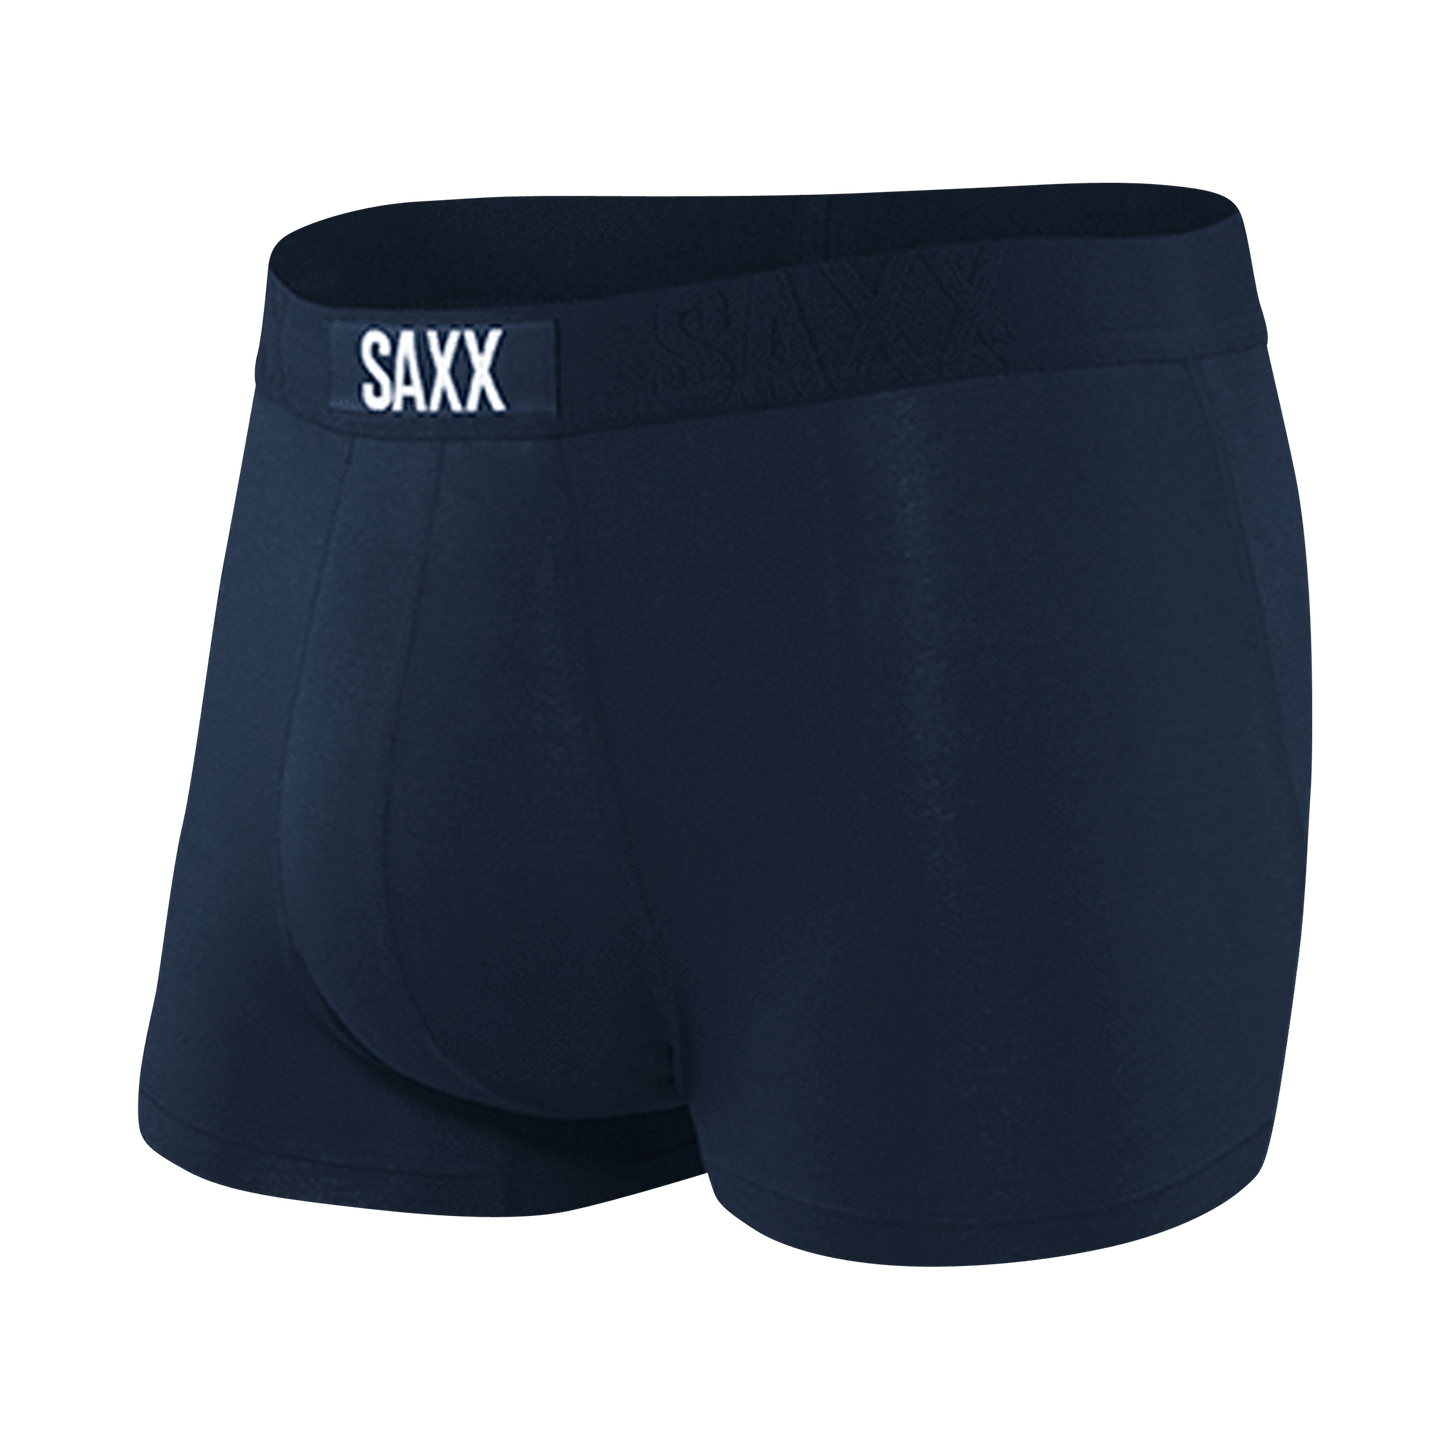 SAXX Volt Boxer Brief – The Halifax Bra Store